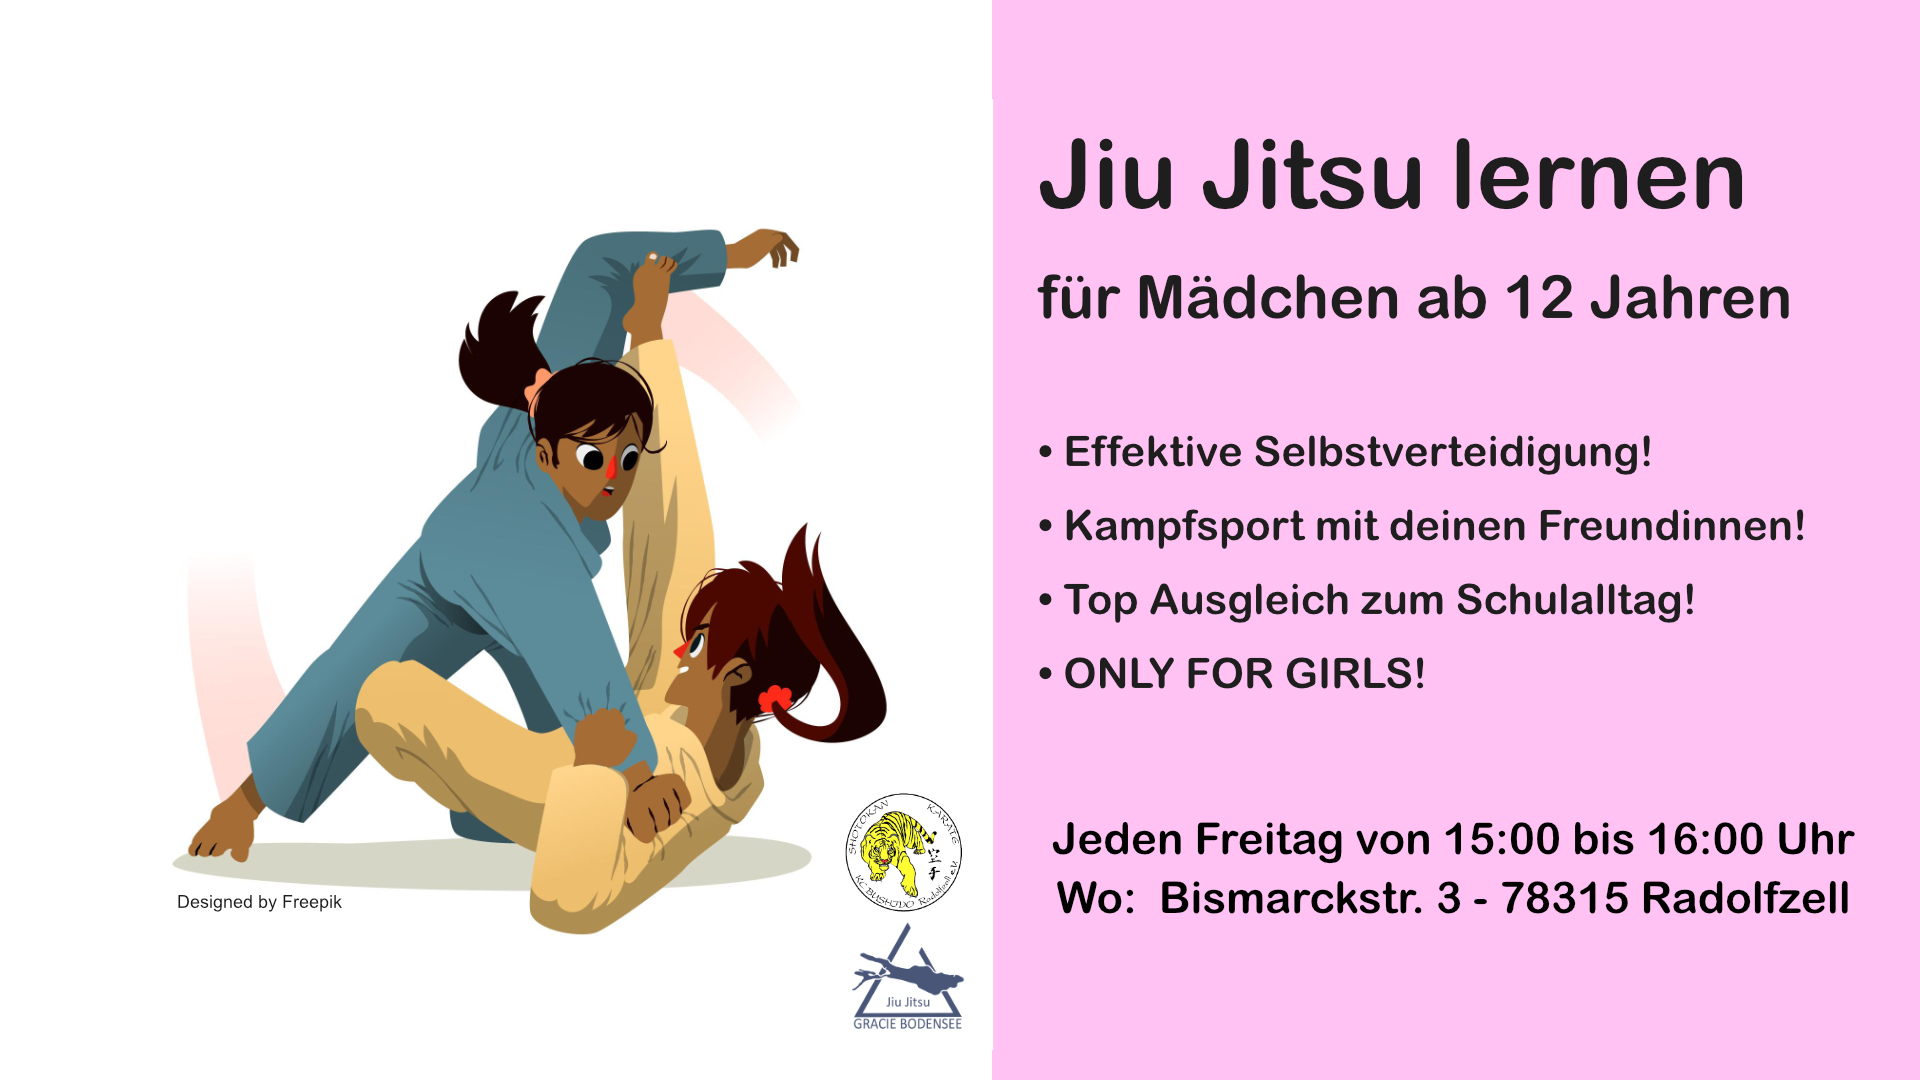 Jiu Jitsu für Mädchen in Radolfzell